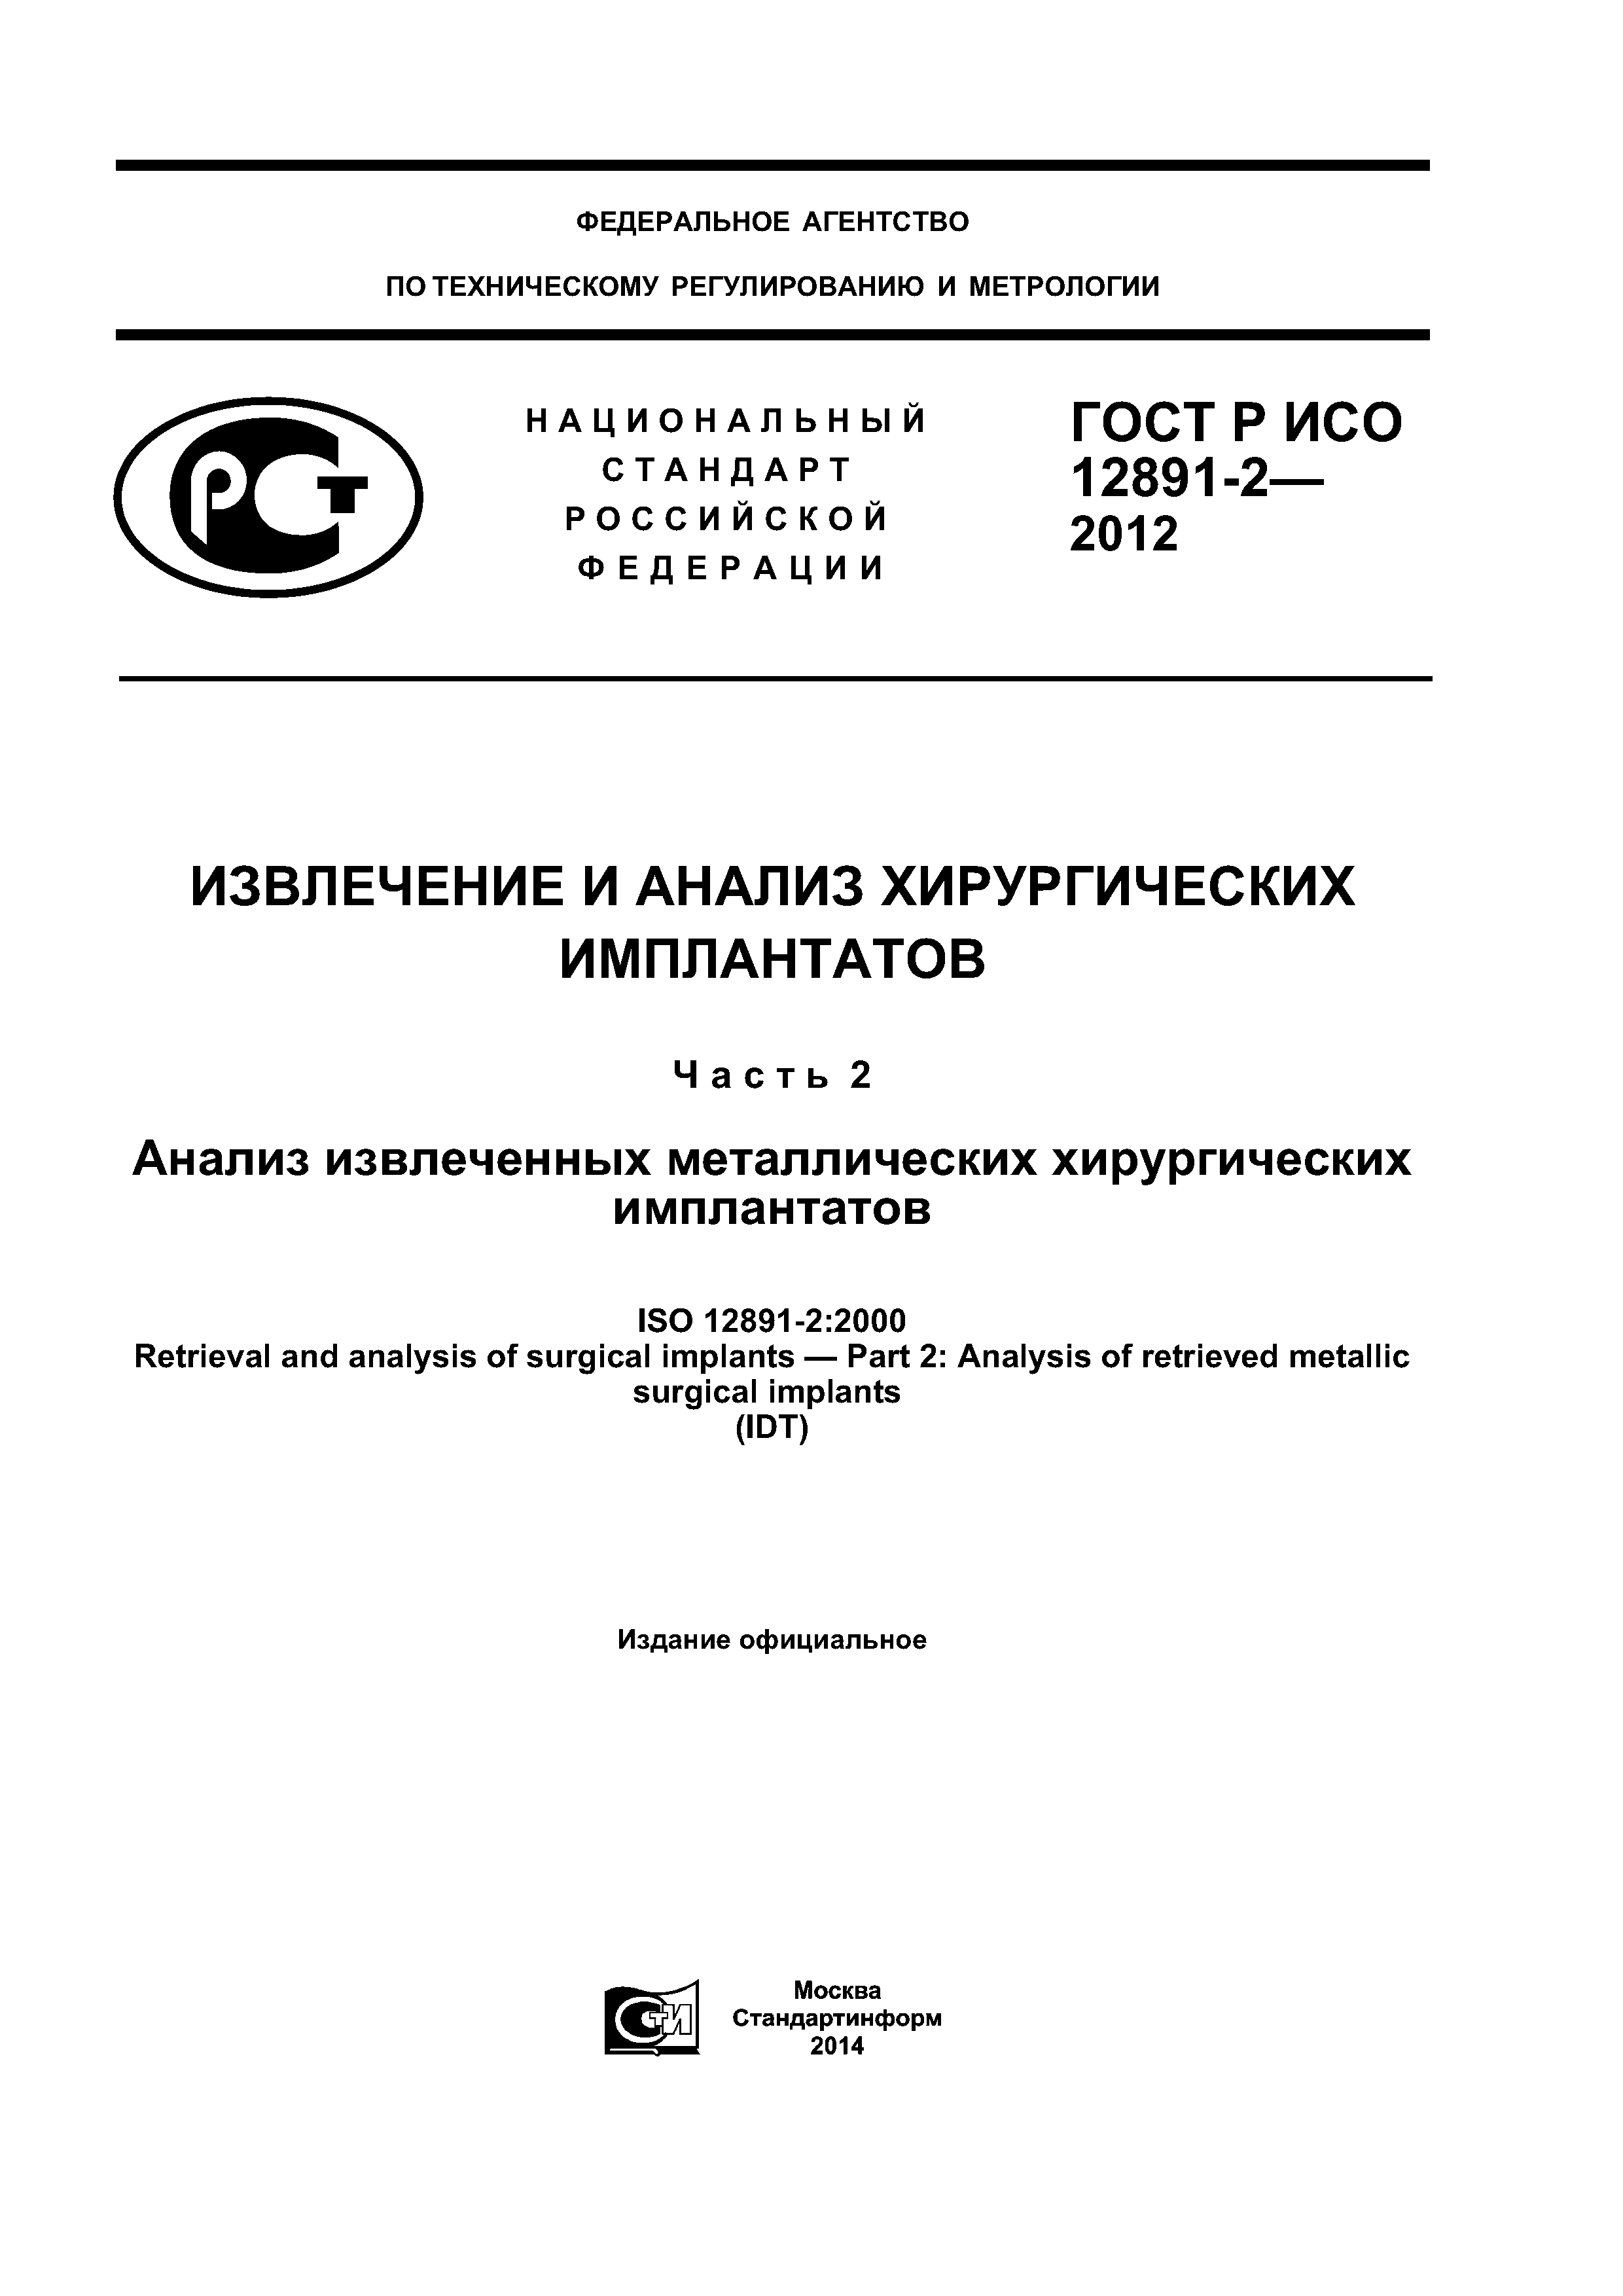 ГОСТ Р ИСО 12891-2-2012